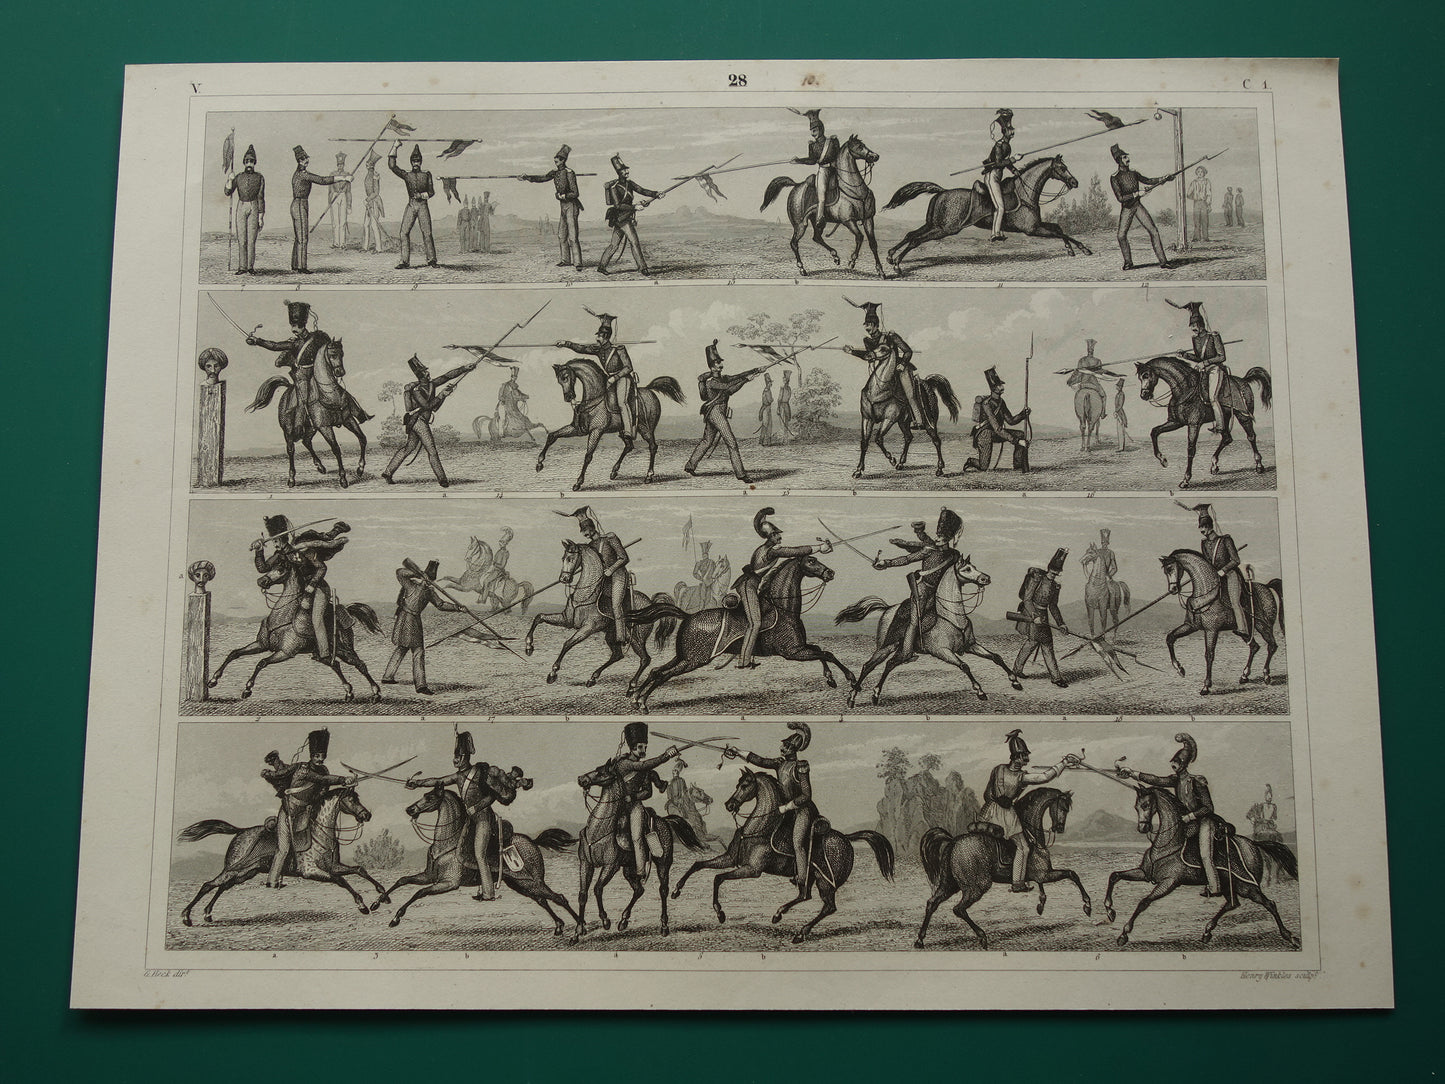 170+ jaar oude prent over infanterie en cavalerie - originele antieke militaire illustratie - leger gevechtstechniek poster print